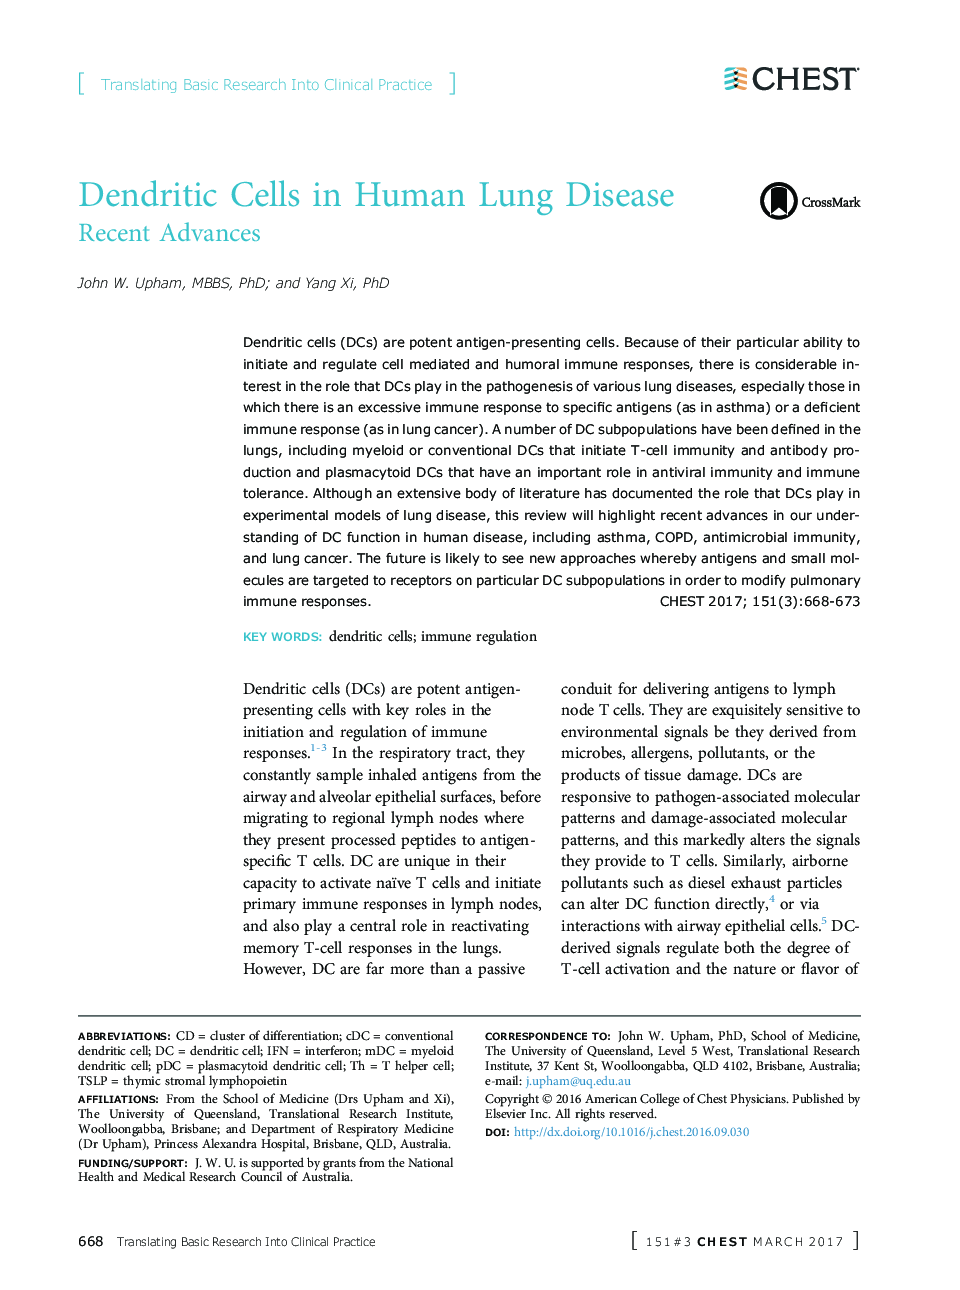 سلولهای دندریتیک در بیماری ریه انسان 